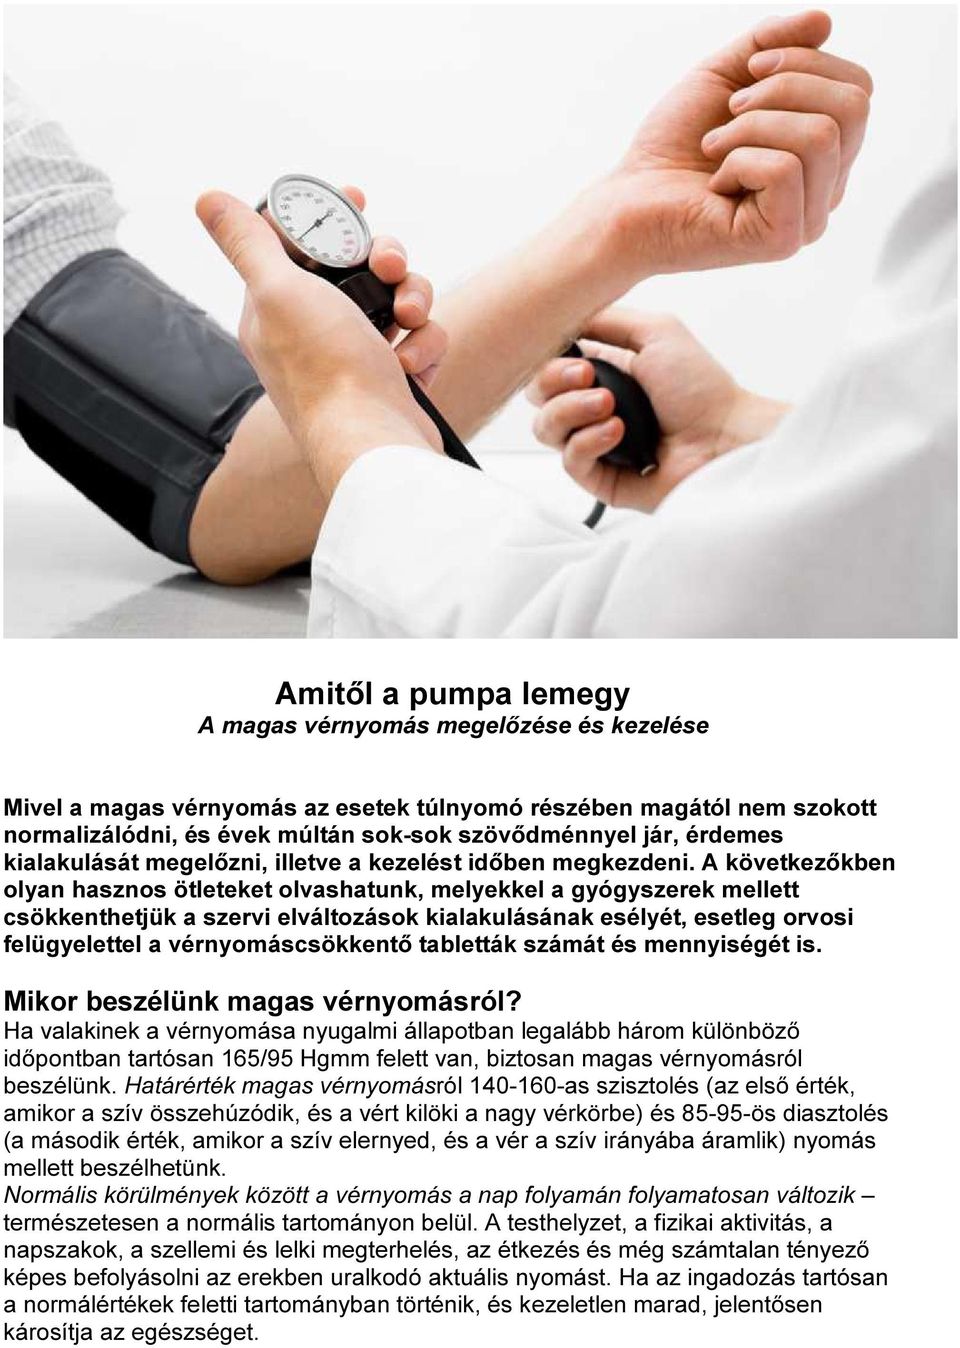 a magas vérnyomás fizikai aktivitással történő kezelése)